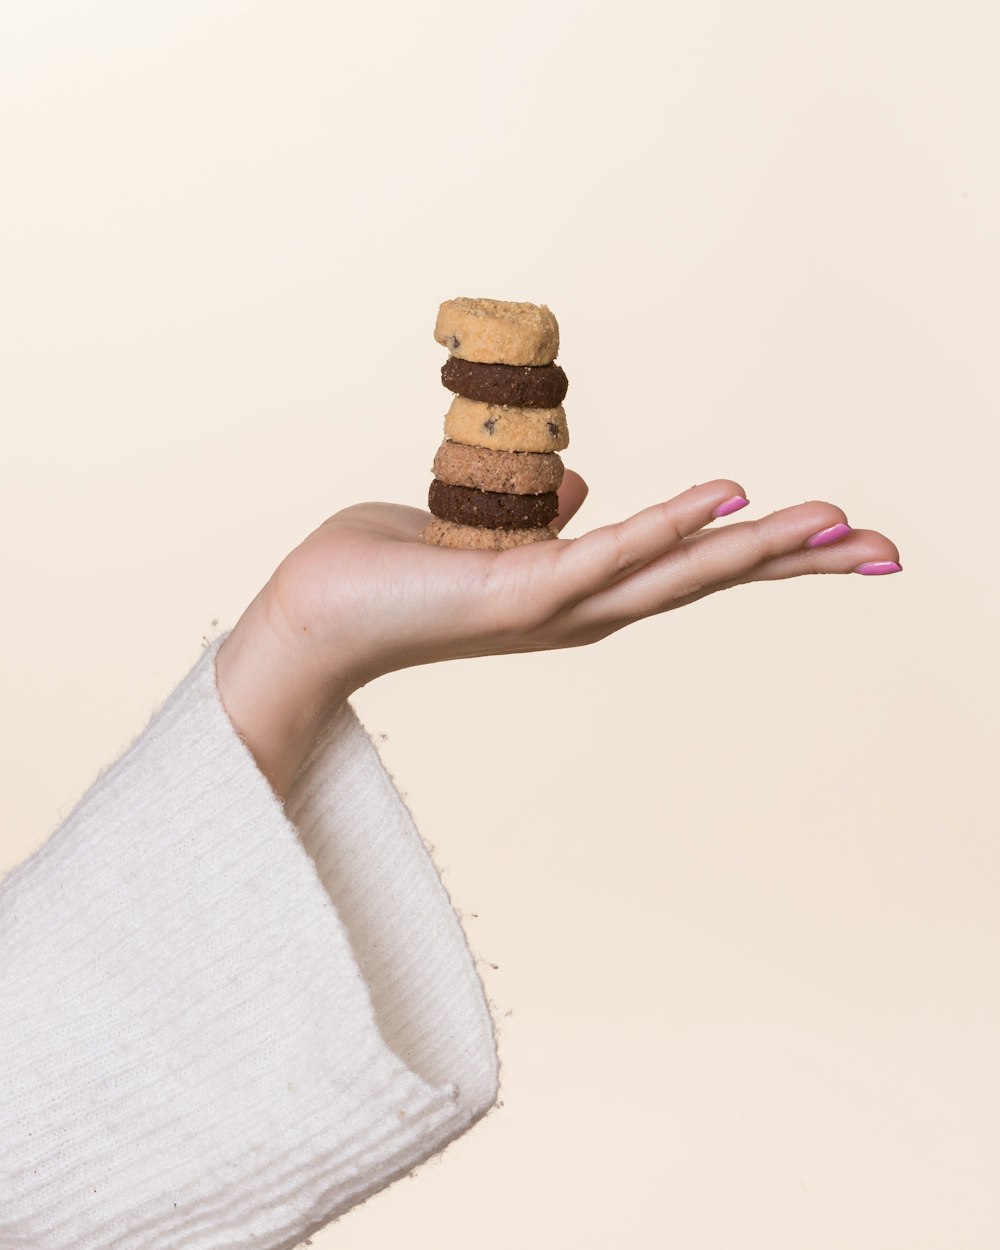 biscuits bruns sur la main de la personne